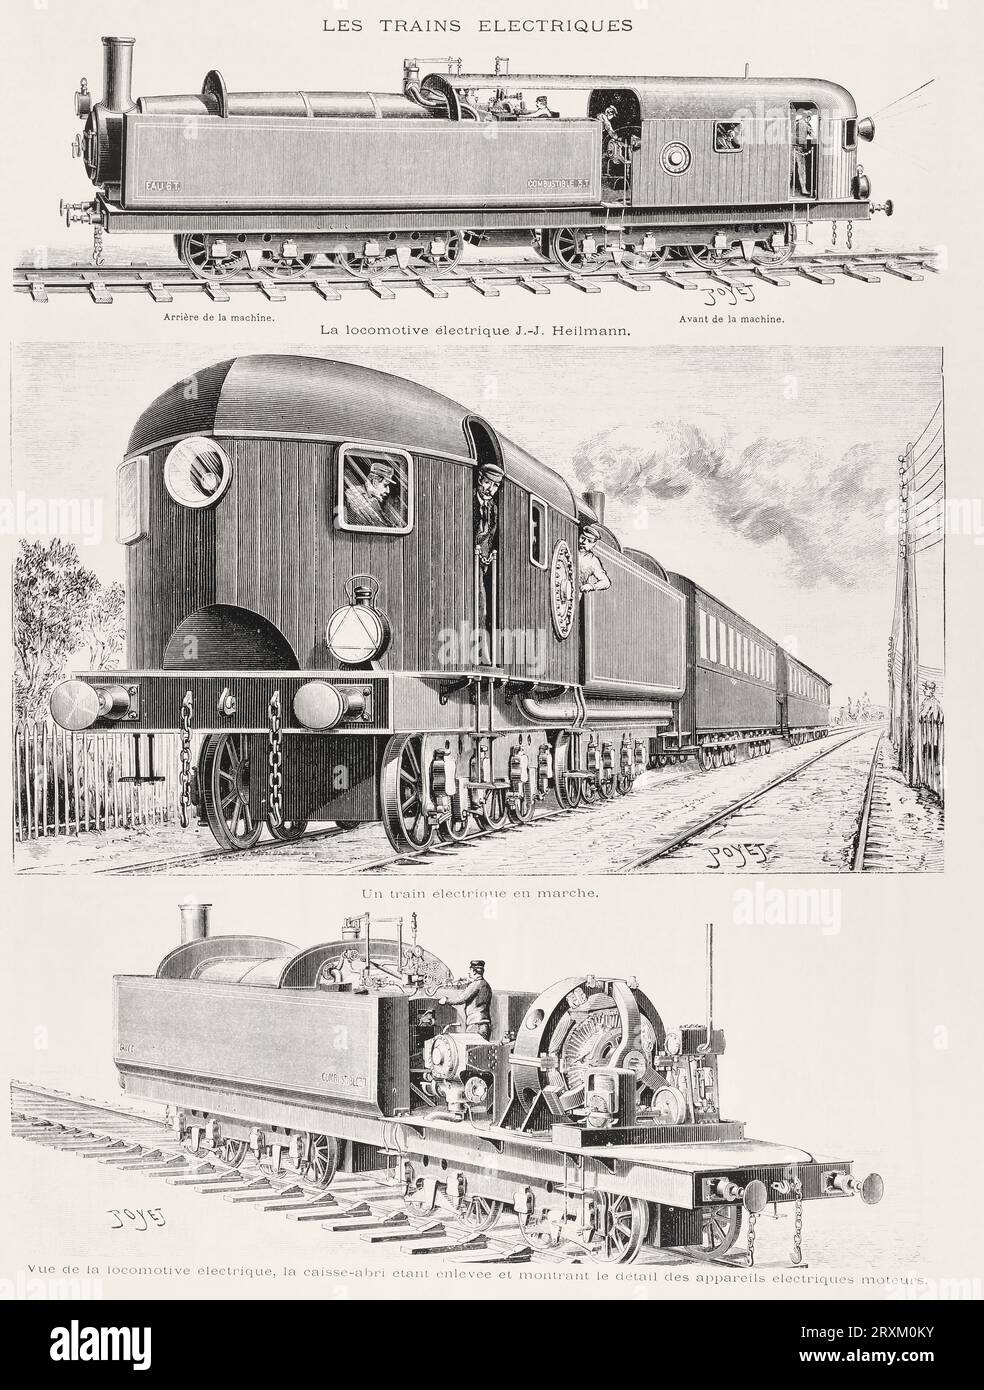 https://c8.alamy.com/comp/2RXM0KY/le-train-electrique-arrire-de-la-machine-avant-de-la-machine-un-train-lectrique-en-mouvement-extract-from-lillustration-journal-universel-vintage-french-illustrated-newspaper-1893-2RXM0KY.jpg